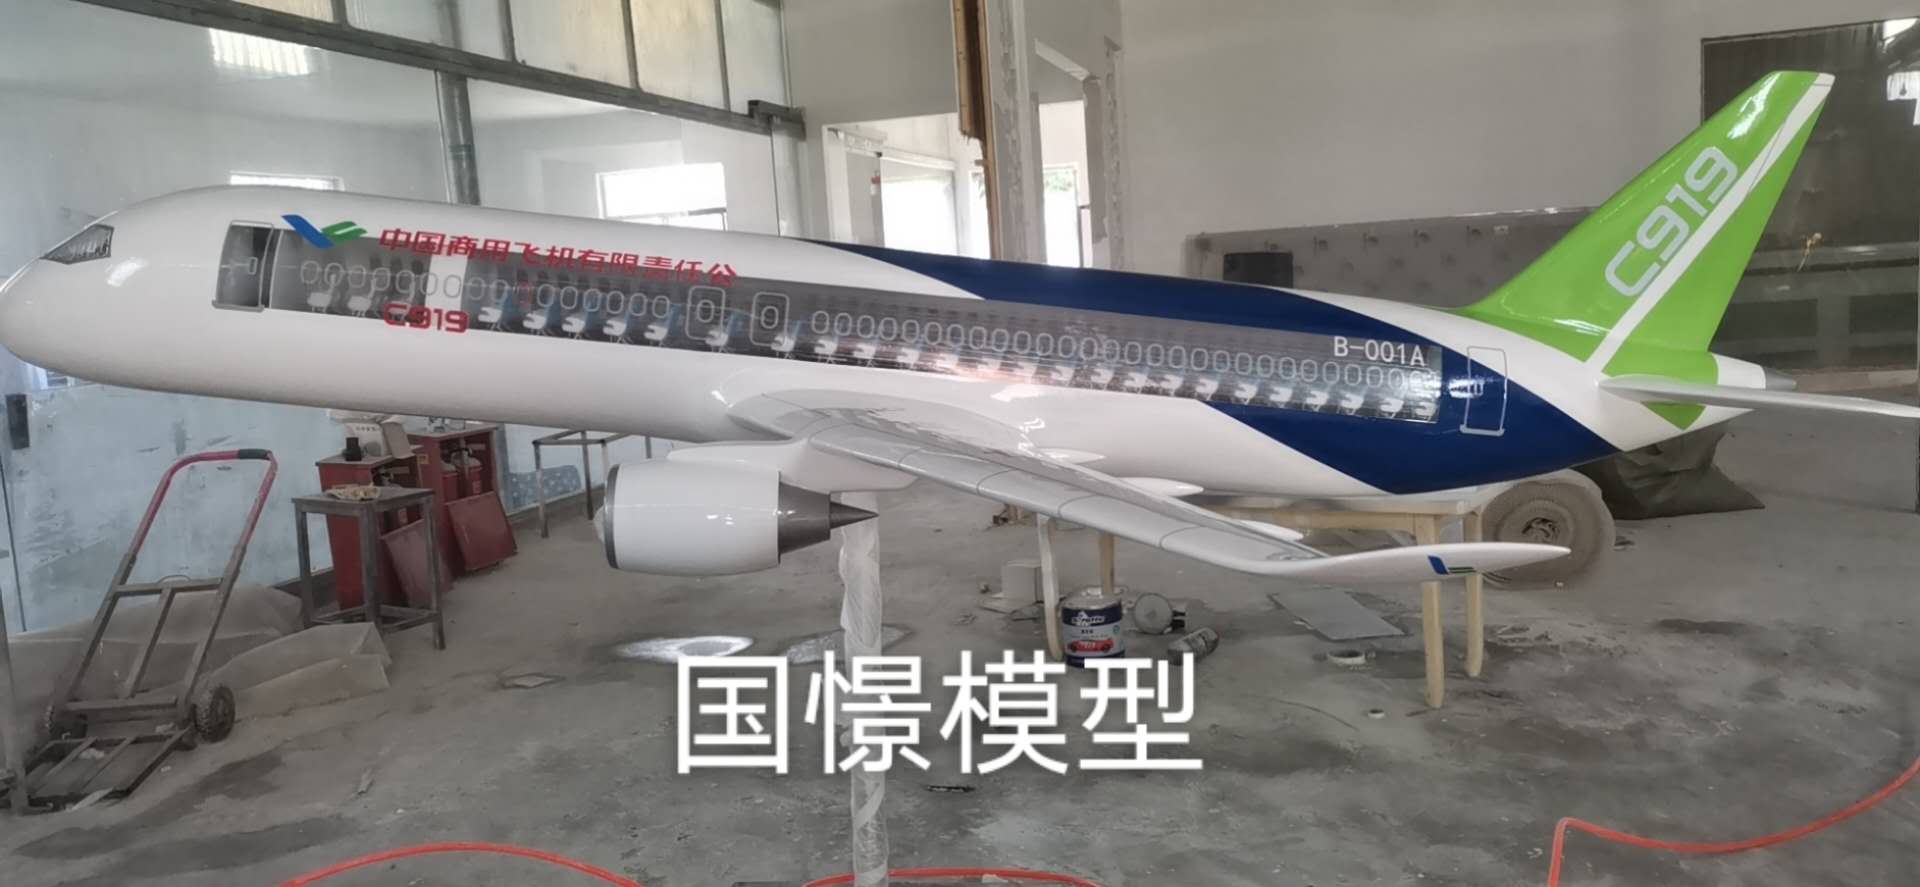 阳信县飞机模型